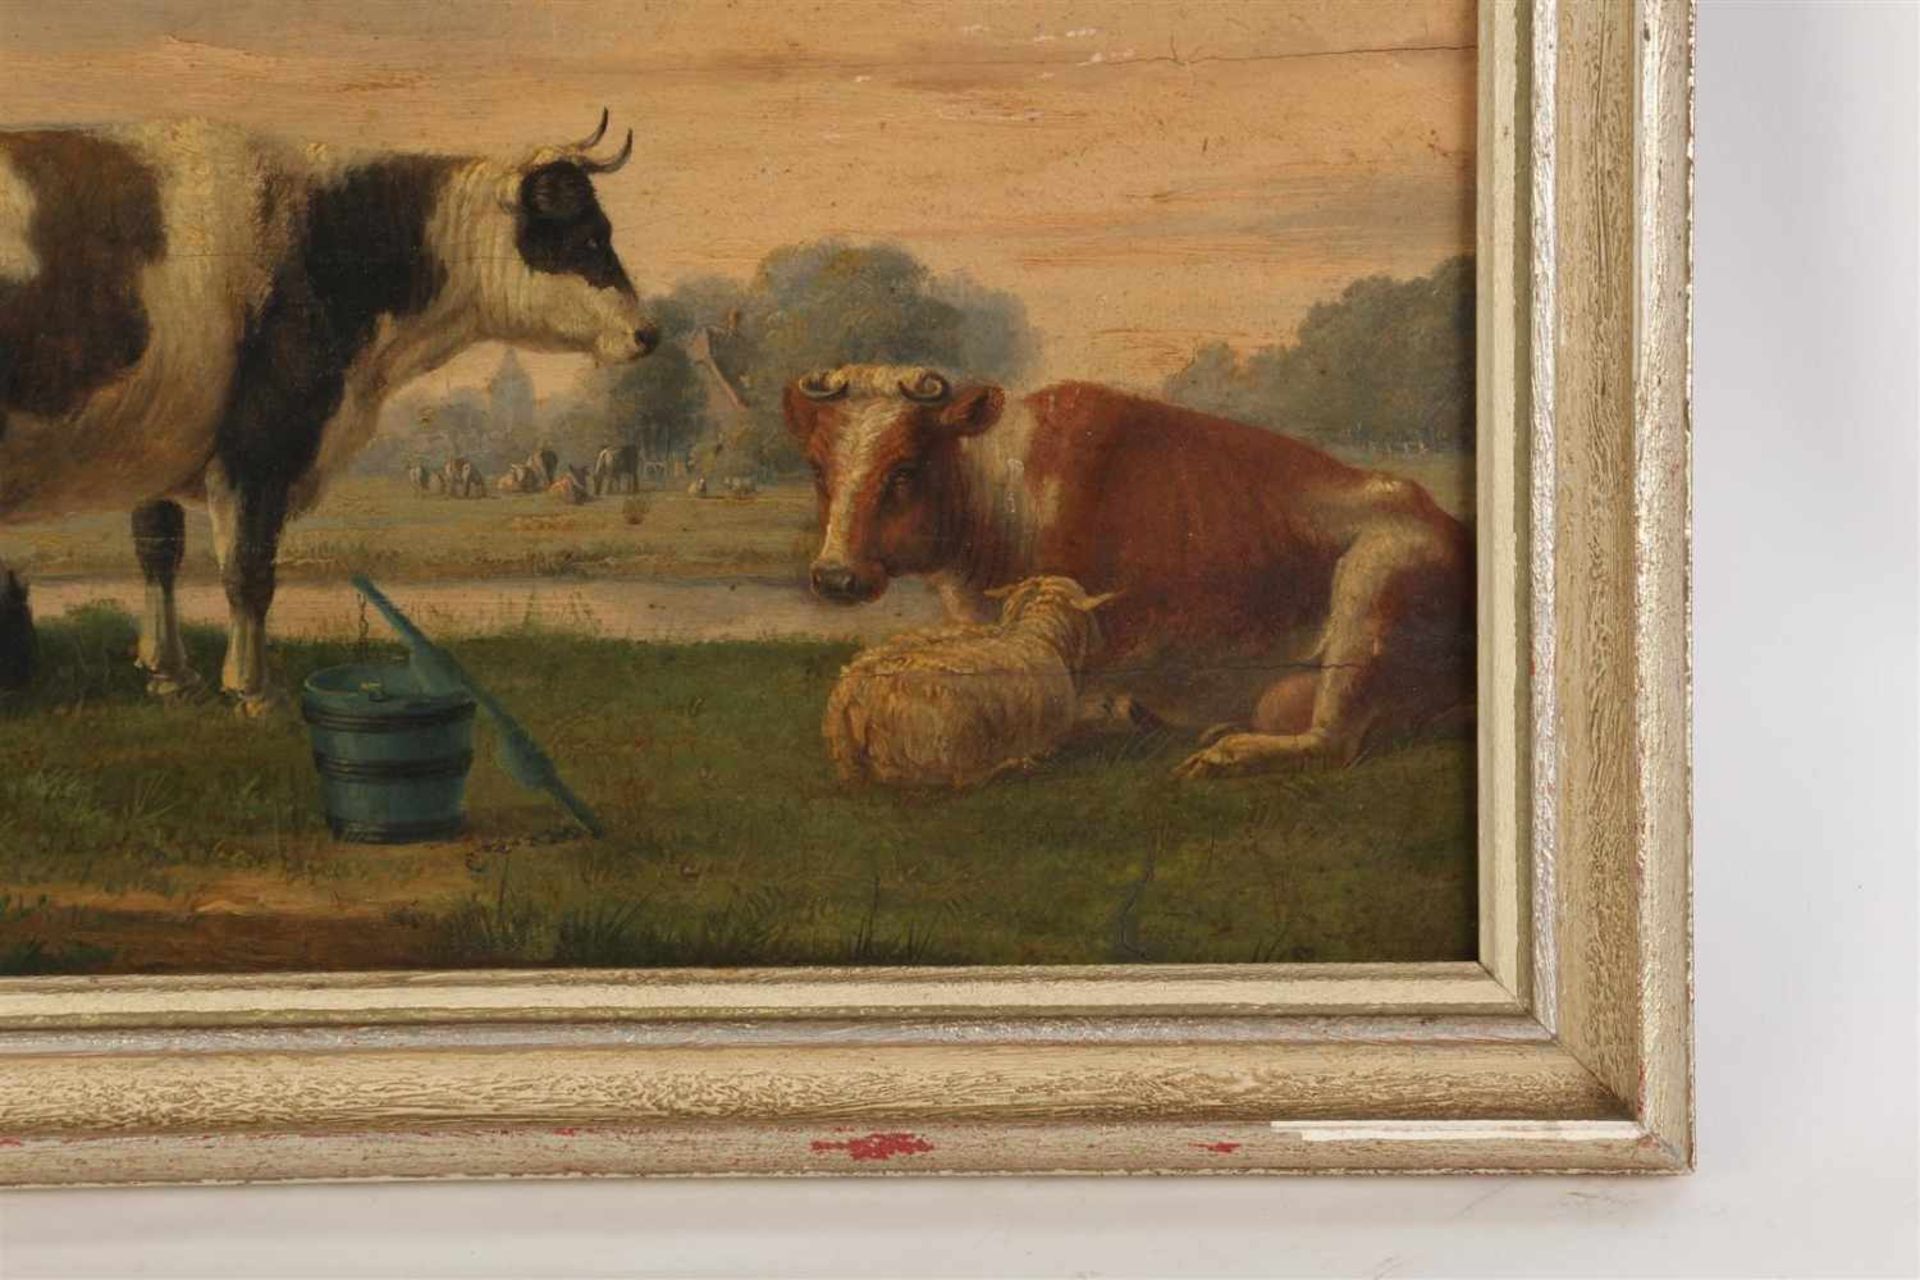 Schilderij olieverf op paneel 'Landschap met vee', gesigneerd C. van der Bijl, gedateerd 1861. - Bild 4 aus 5